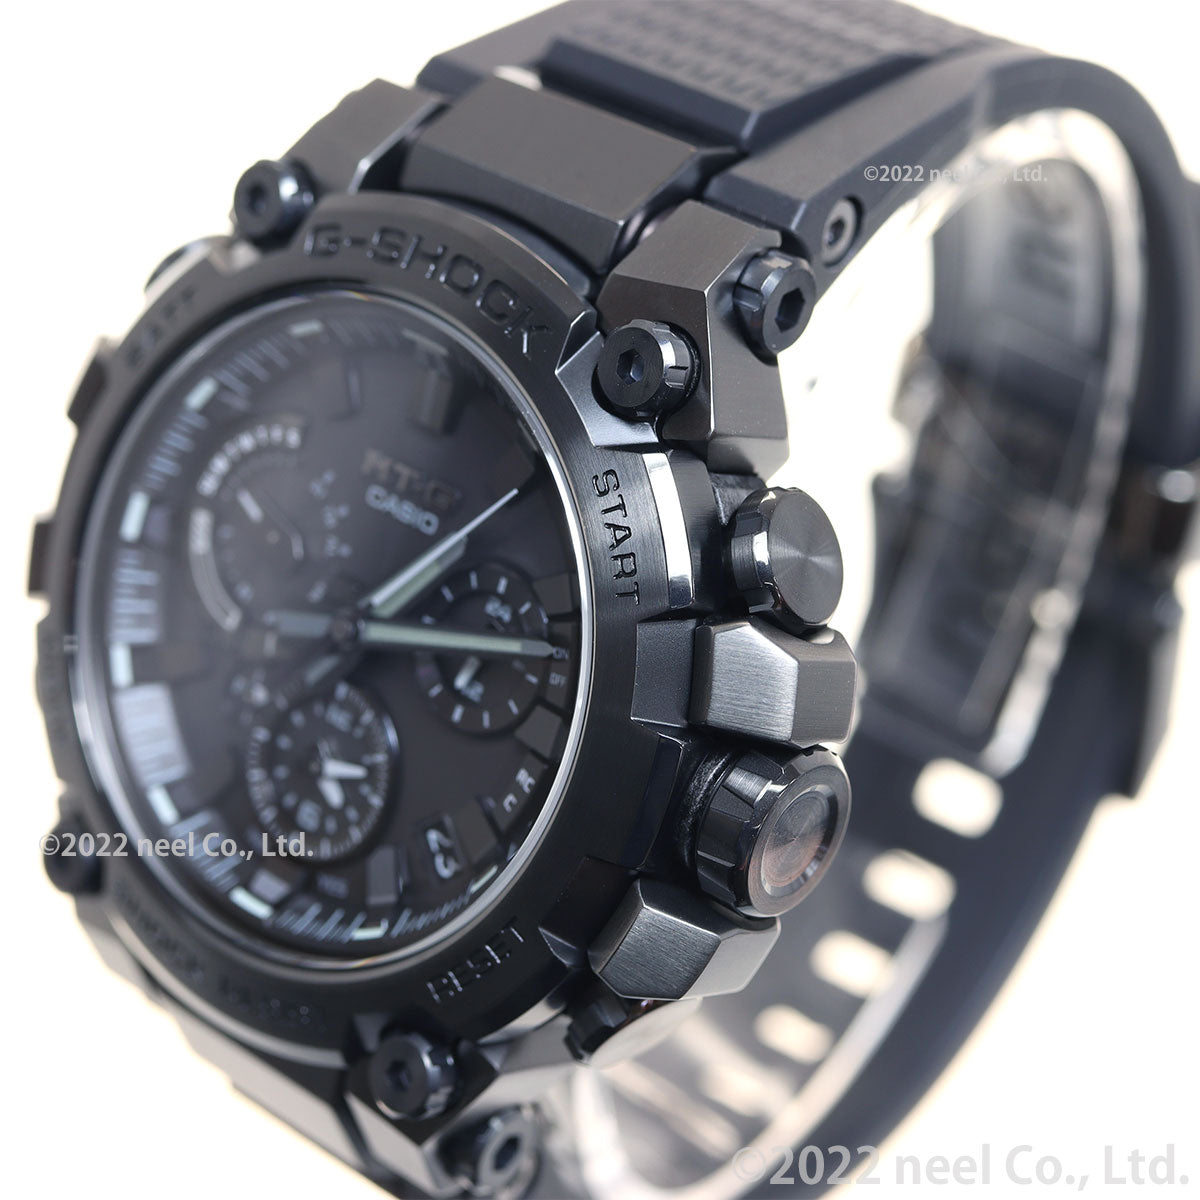 G-SHOCK Gショック MT-G MTG-B3000B-1AJF メンズ 腕時計 電波ソーラー Bluetooth アナログ ブラック 国内正規品 カシオ